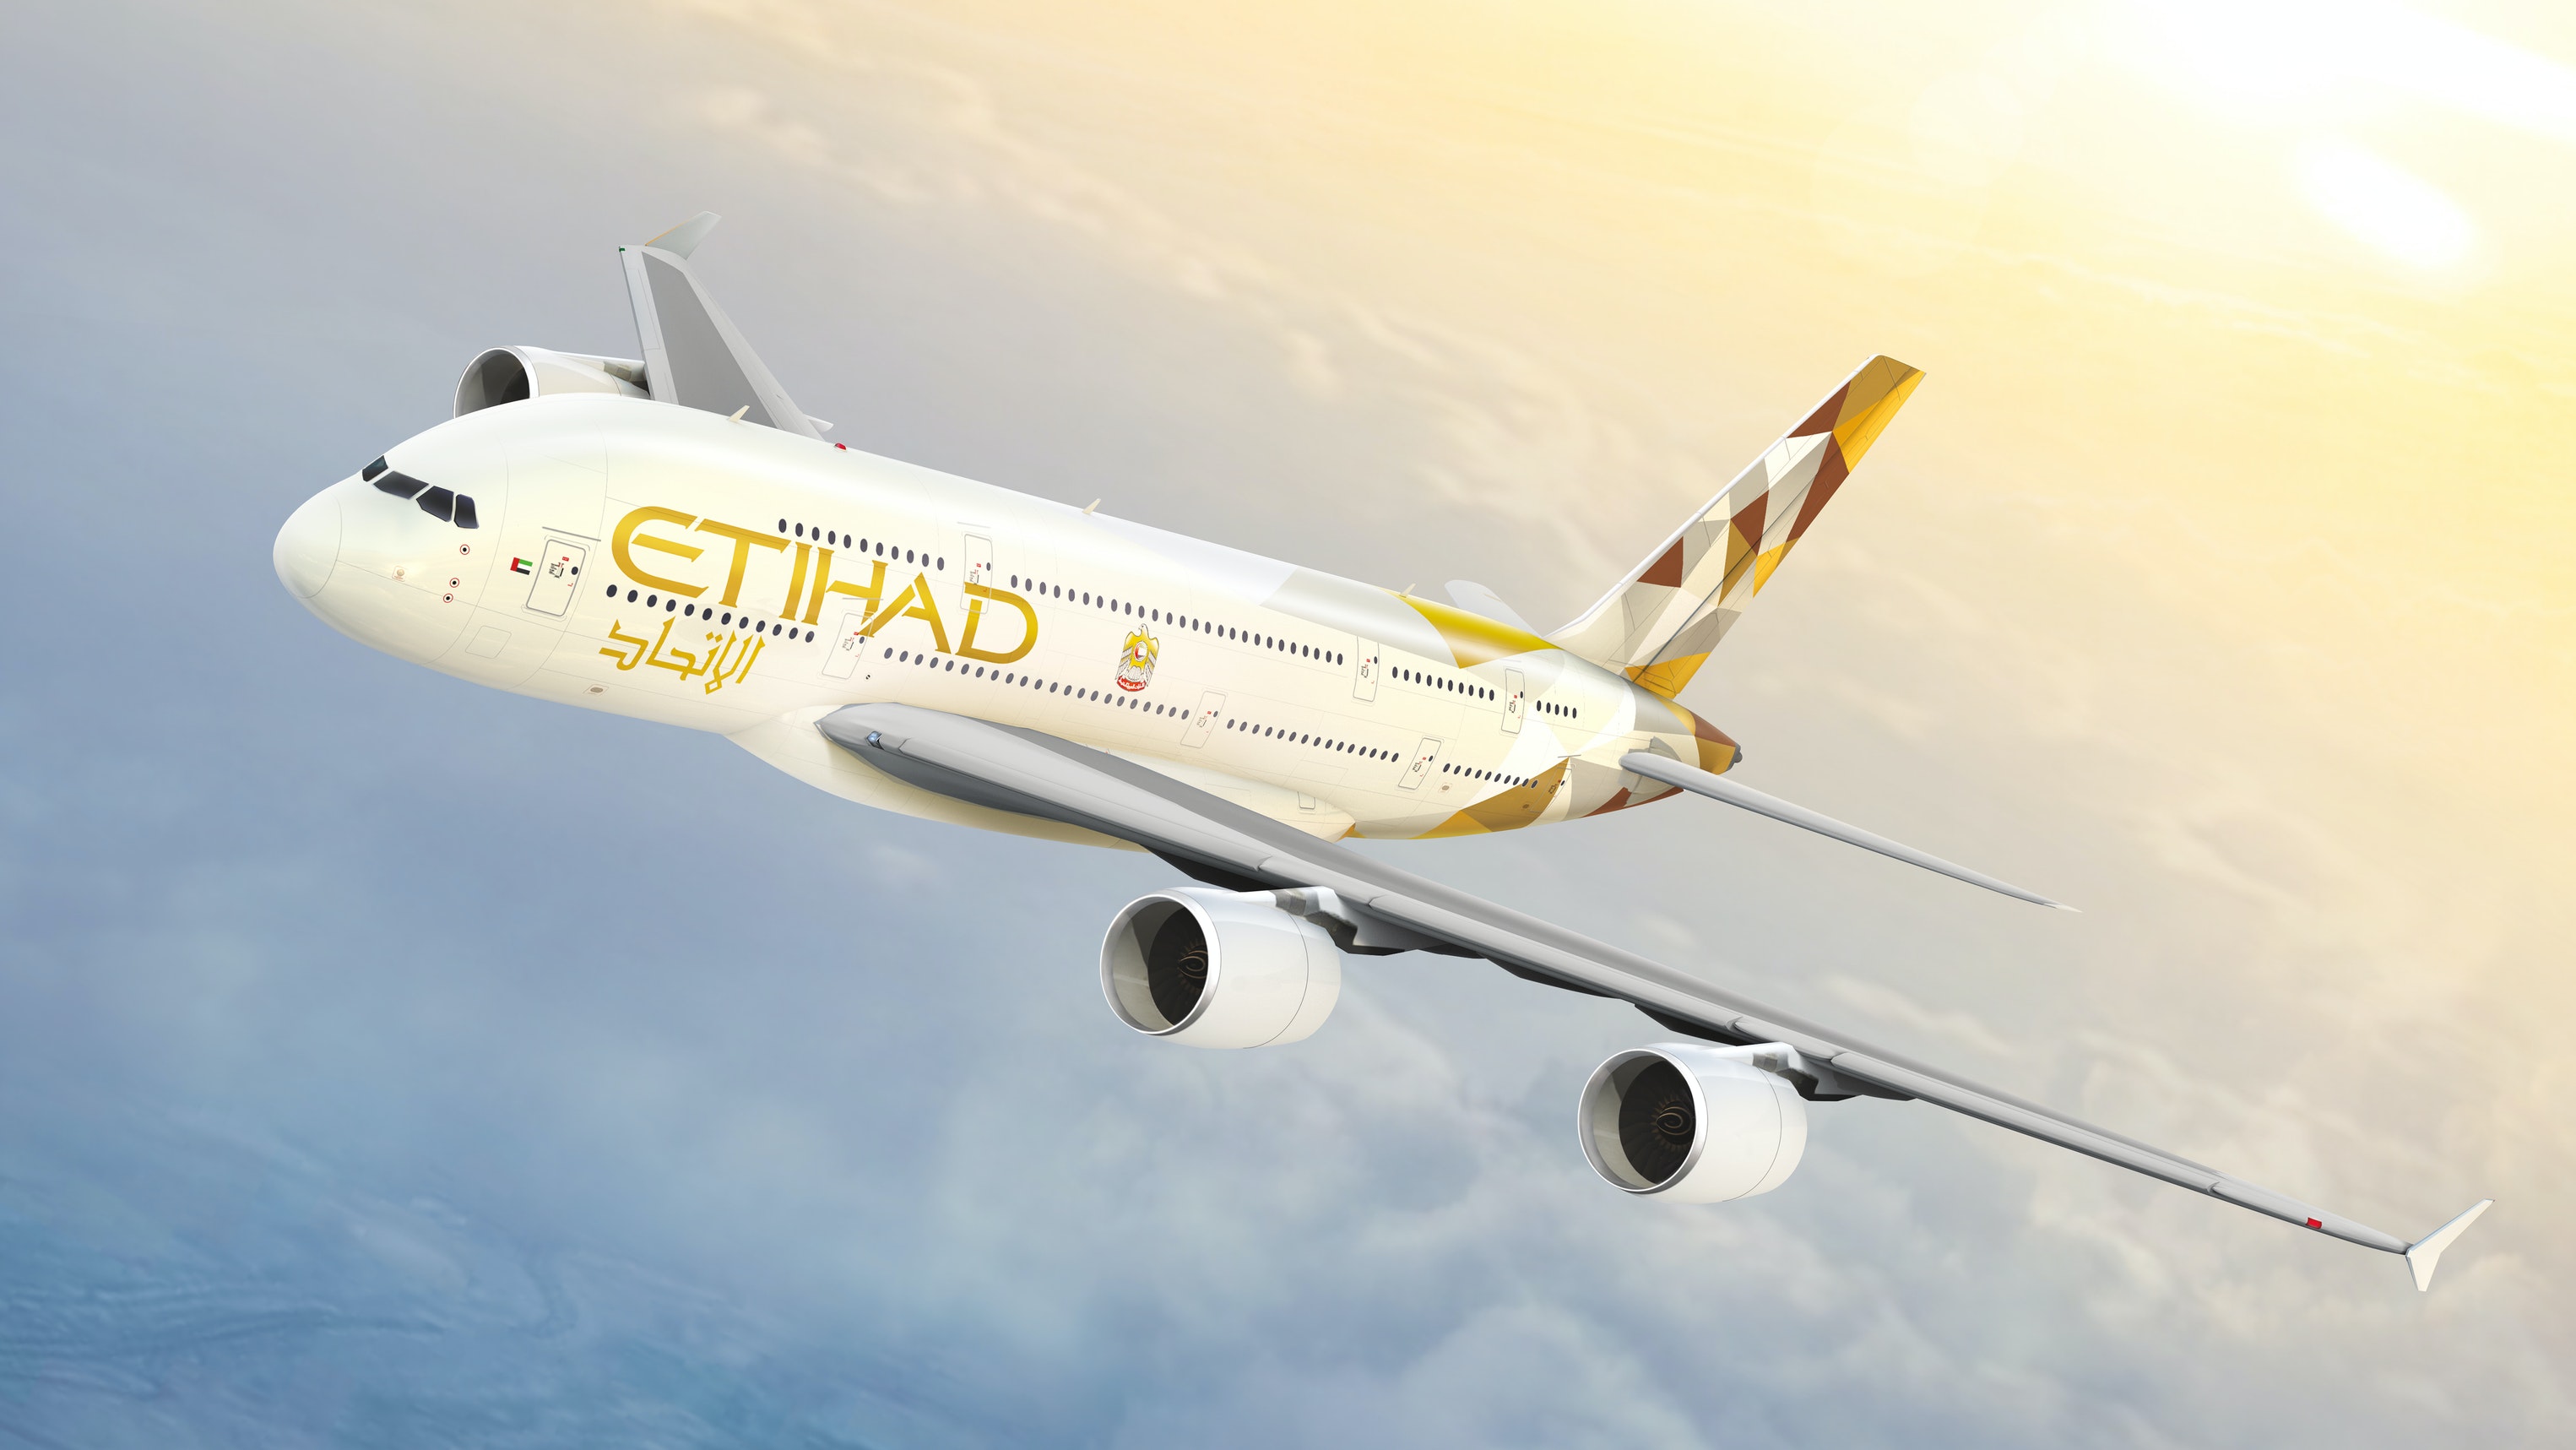 Etihad Airways welcomes the reopening of Abu Dhabi